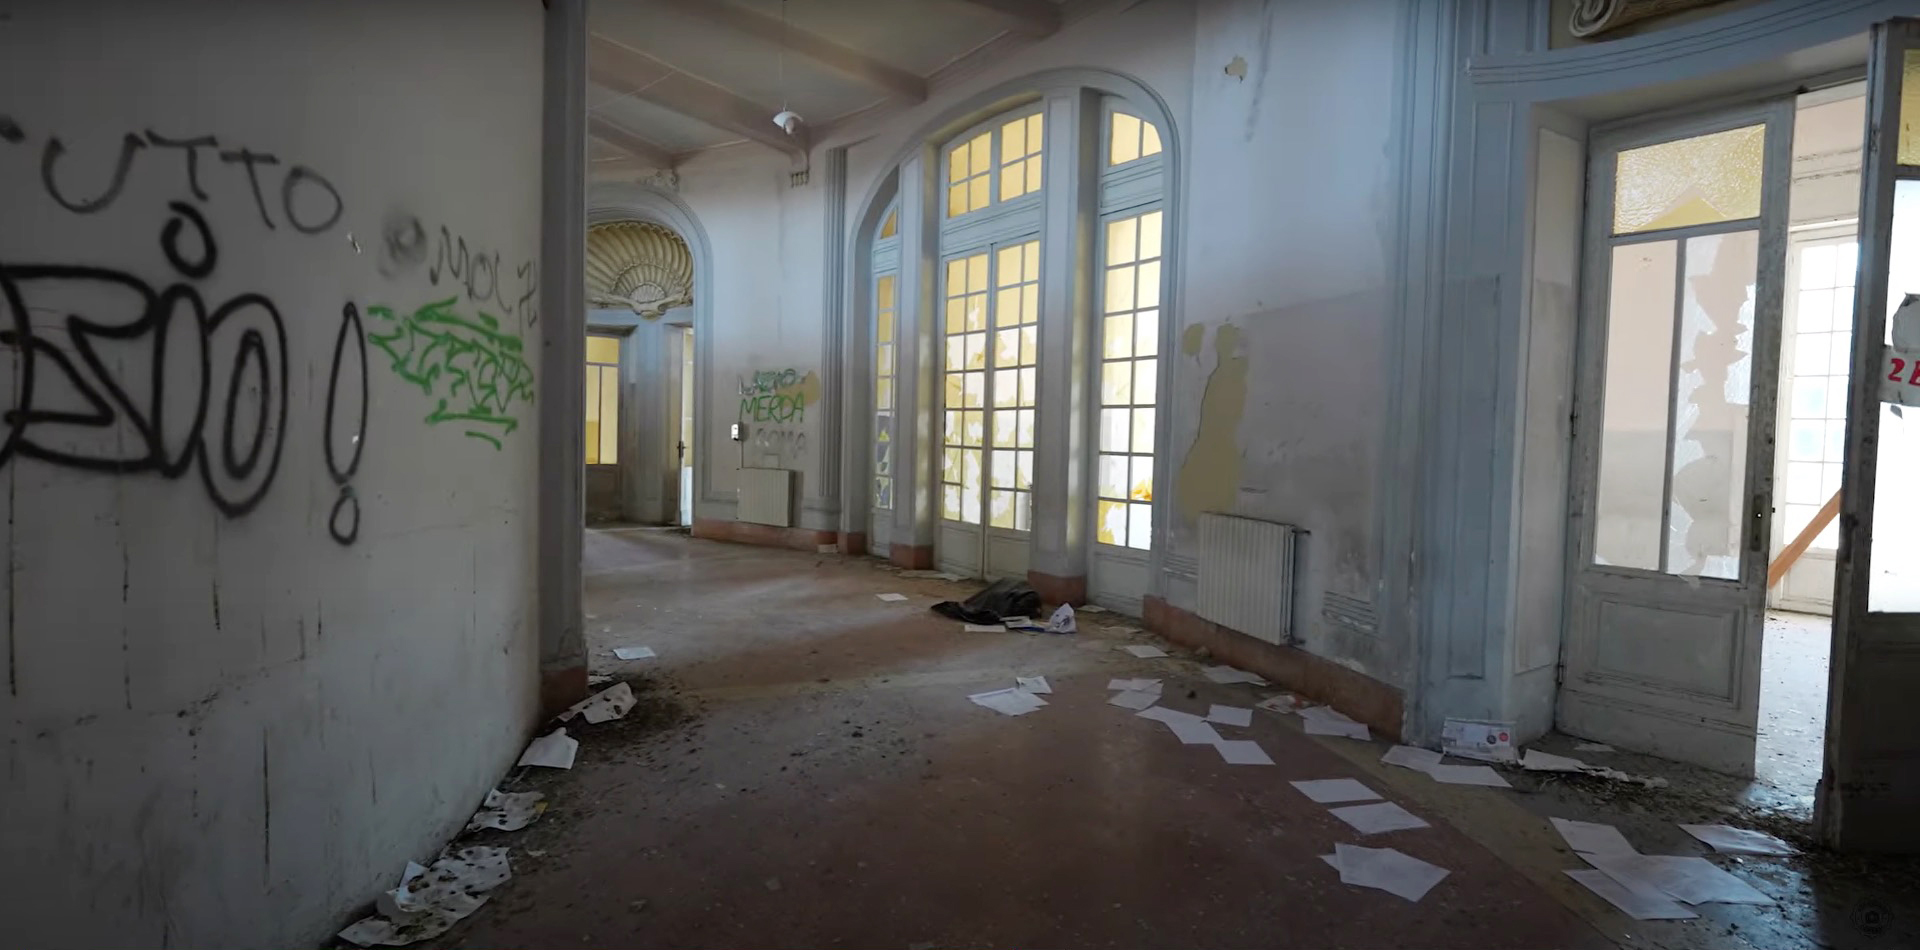 Graffiti, kaputte Türen und unerwünschte Papierstücke haben das einst luxuriöse Gebäude zerstört